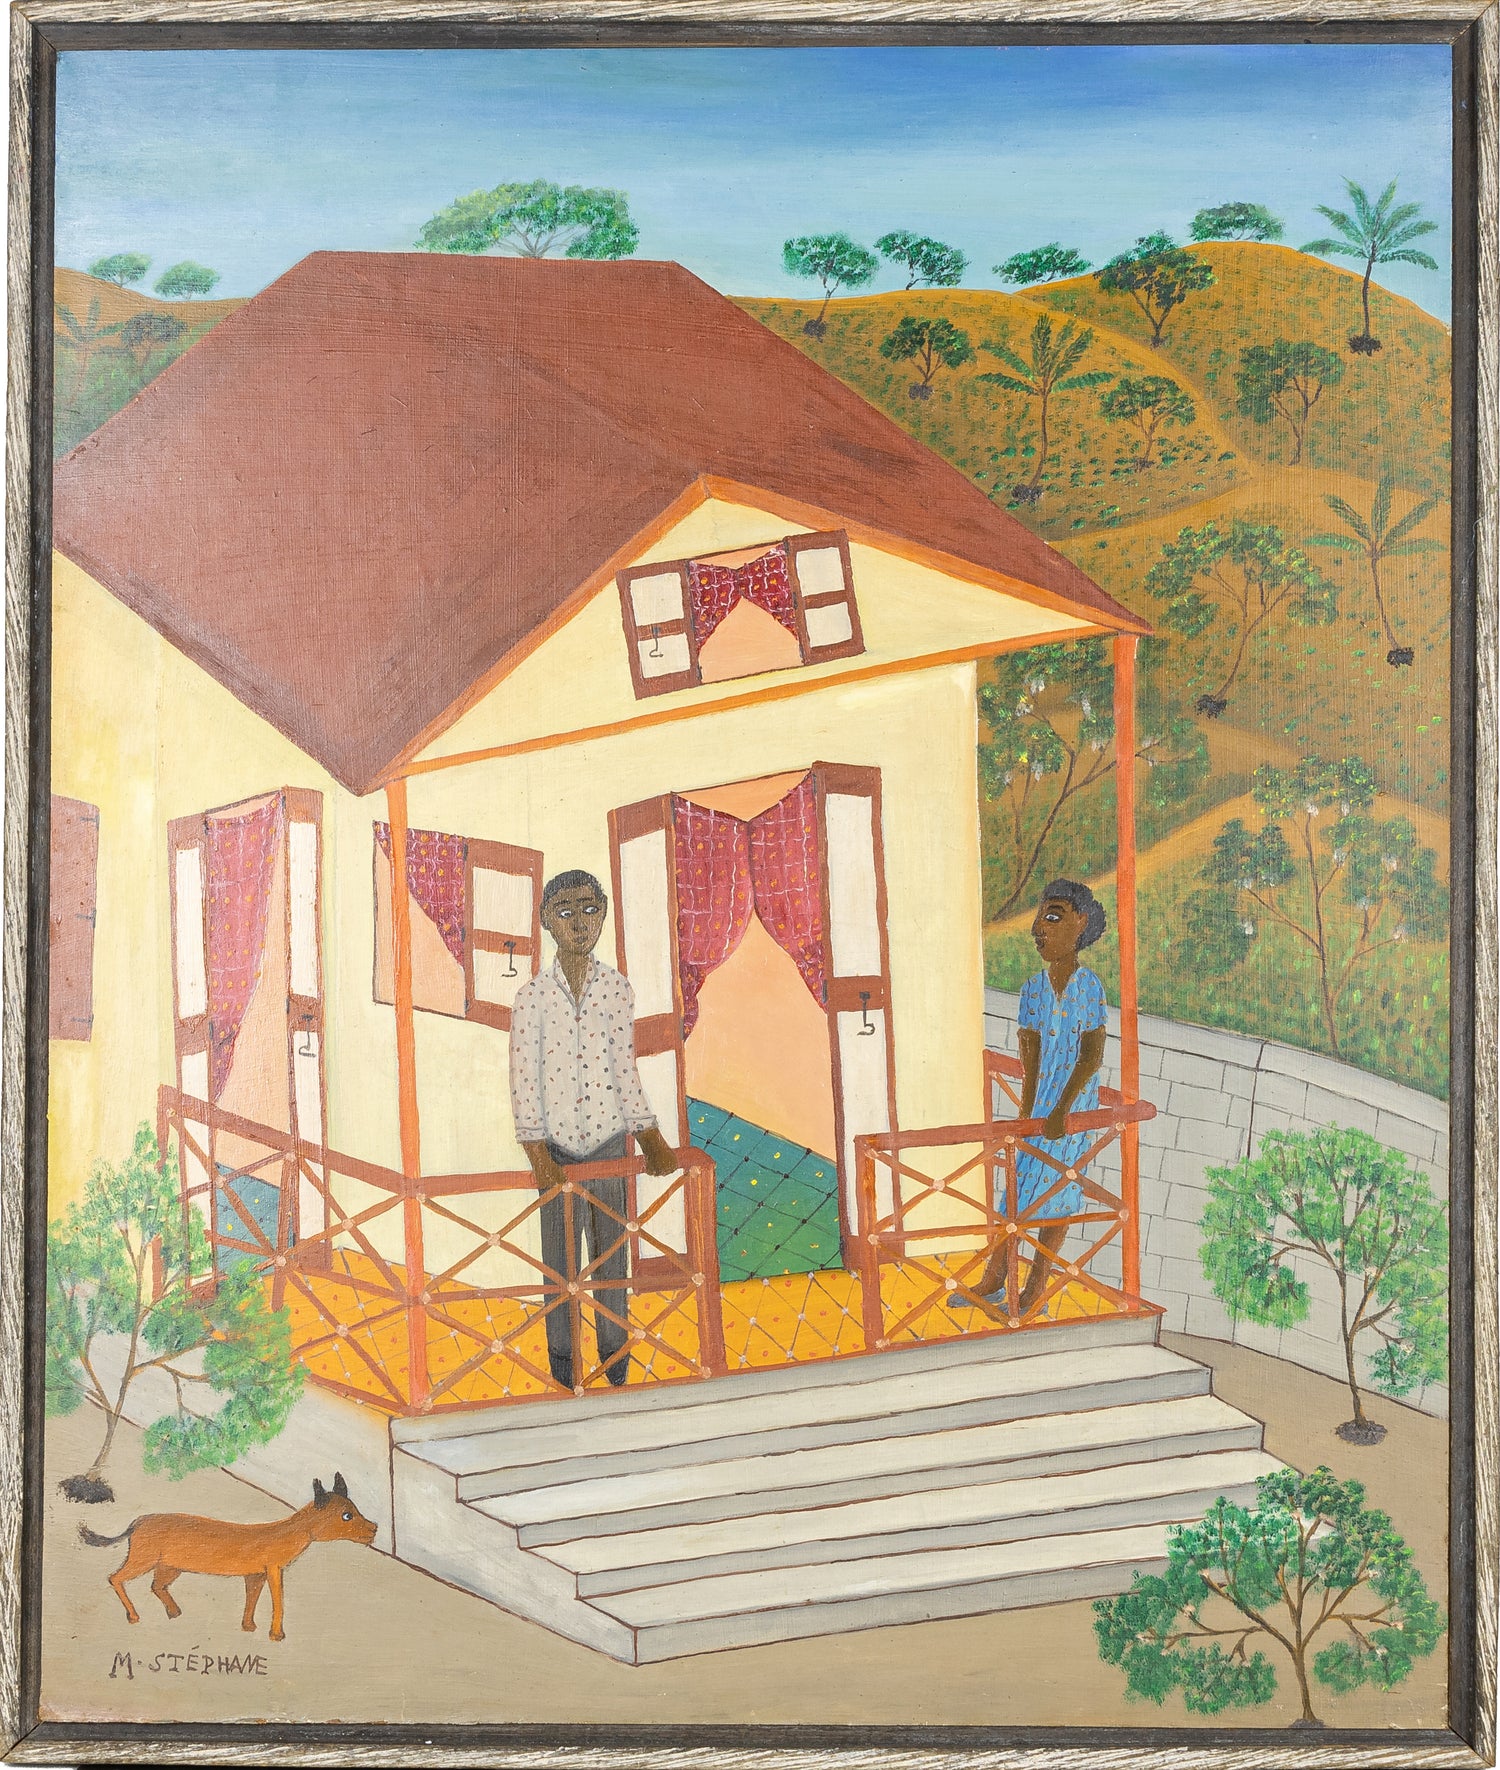 Micius Stephane (Haitian, 1912-1996)